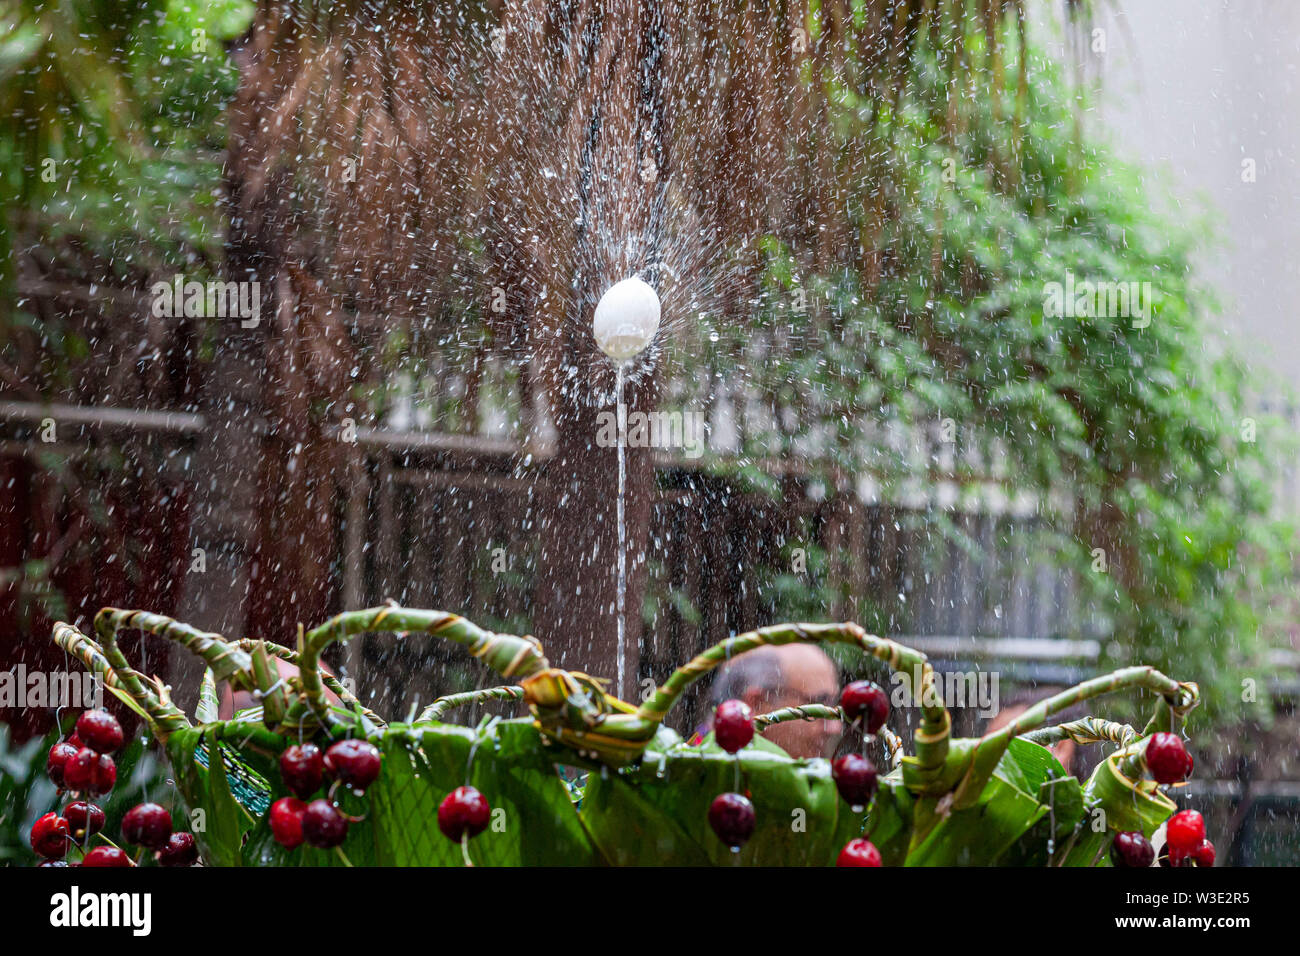 Barcelona, Spain. Interior garden of Ateneu Barcelones. Ou com balla in fountain, Corpus day tradition. Stock Photo